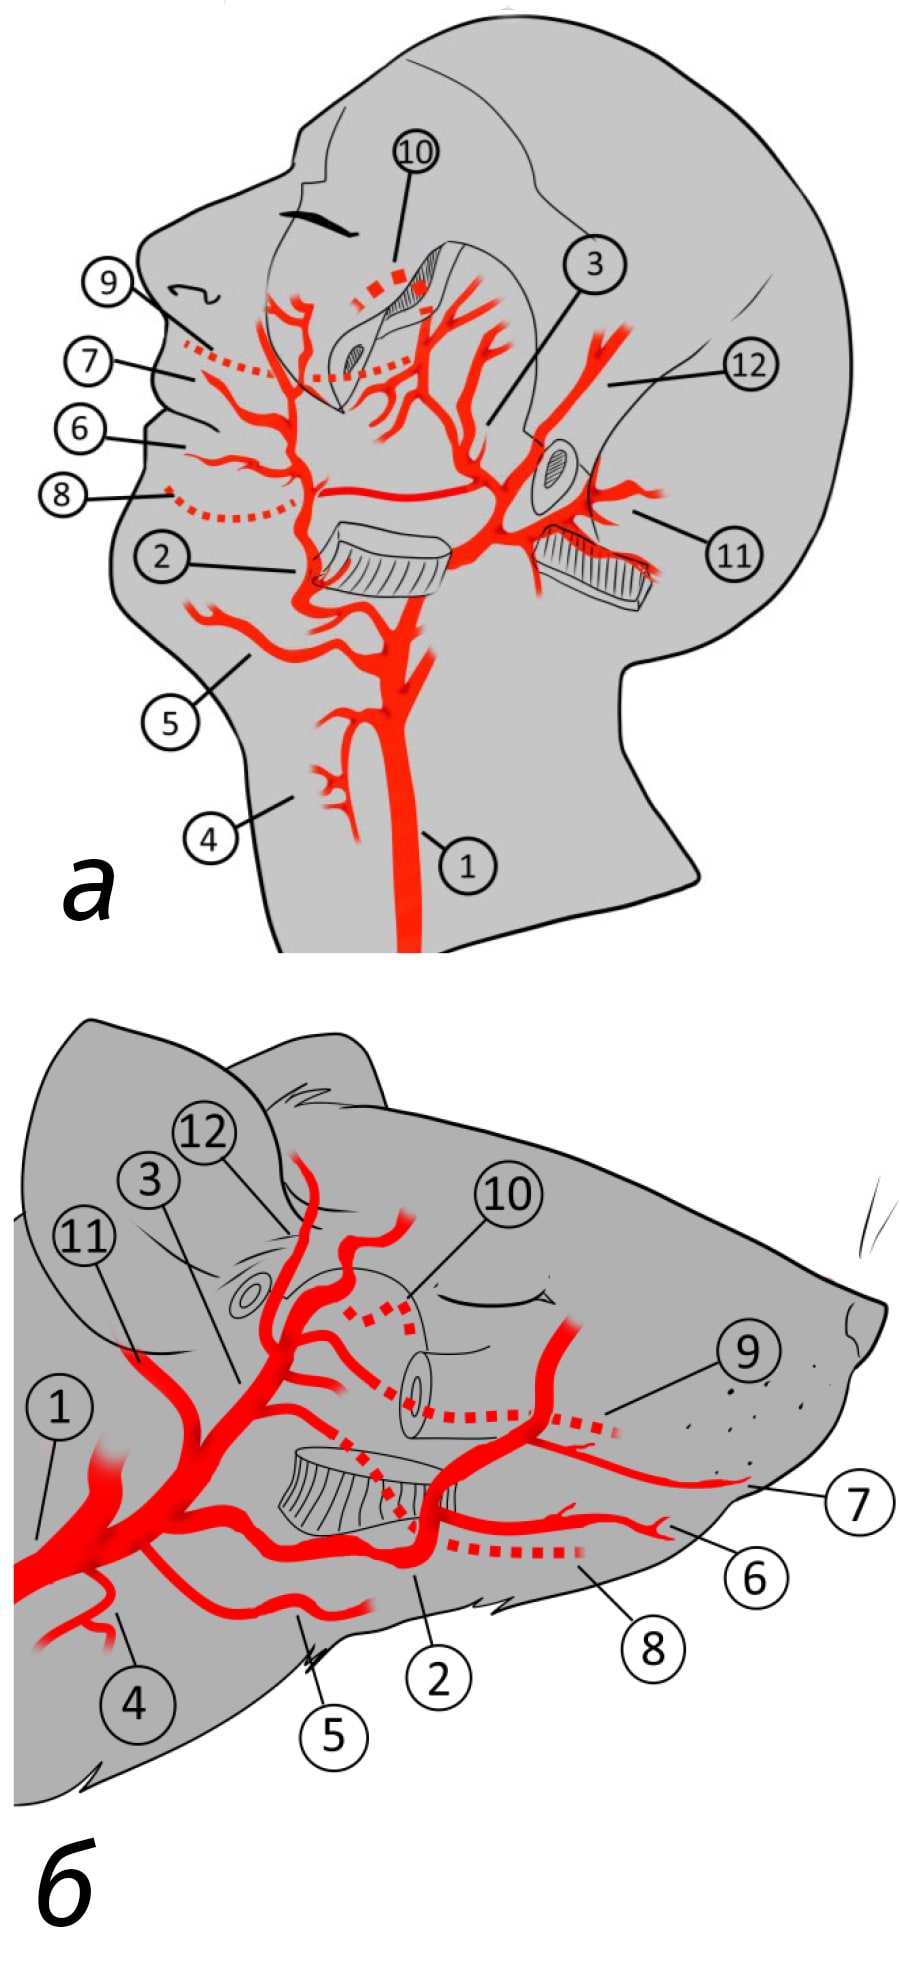  <strong>Рис. 3.</strong> Схема кровоснабжения головы человека и лабораторных животных (на примере крысы): 1– общая сонная артерия; 2 – лицевая артерия; 3 – верхнечелюстная артерия; 4 – щитовидная артерия; 5 – язычная артерия; 6 – нижняя губная артерия; 7 – верхняя губная артерия; 8 – нижняя альвеолярная артерия; 9 – верхняя альвеолярная артерия; 10 – нёбная артерия; 11 – ушная артерия; 12 – поверхностная височная артерия) 